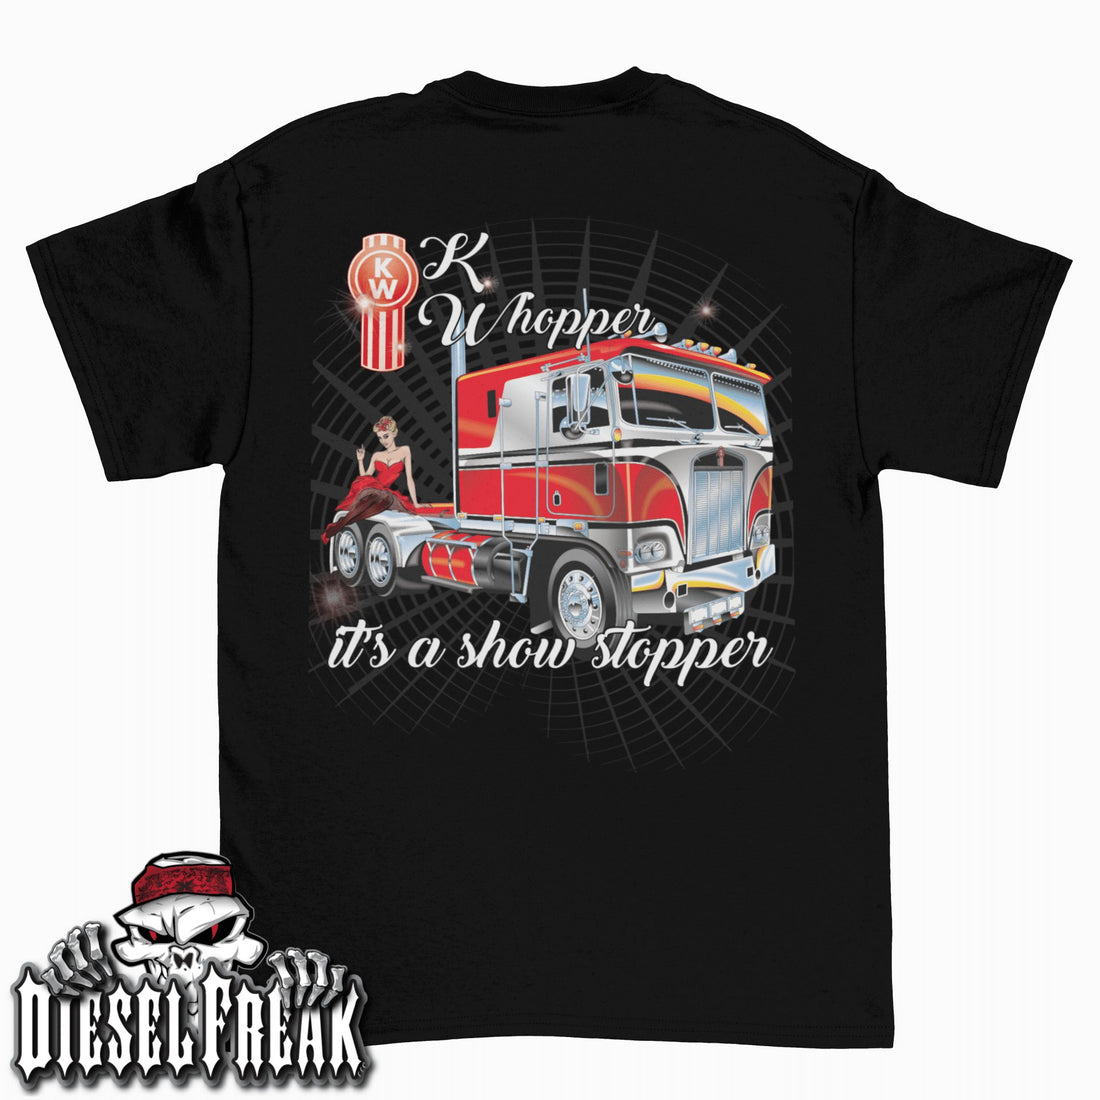 KWhopper Show Stopper T-Shirt - Diesel Freak